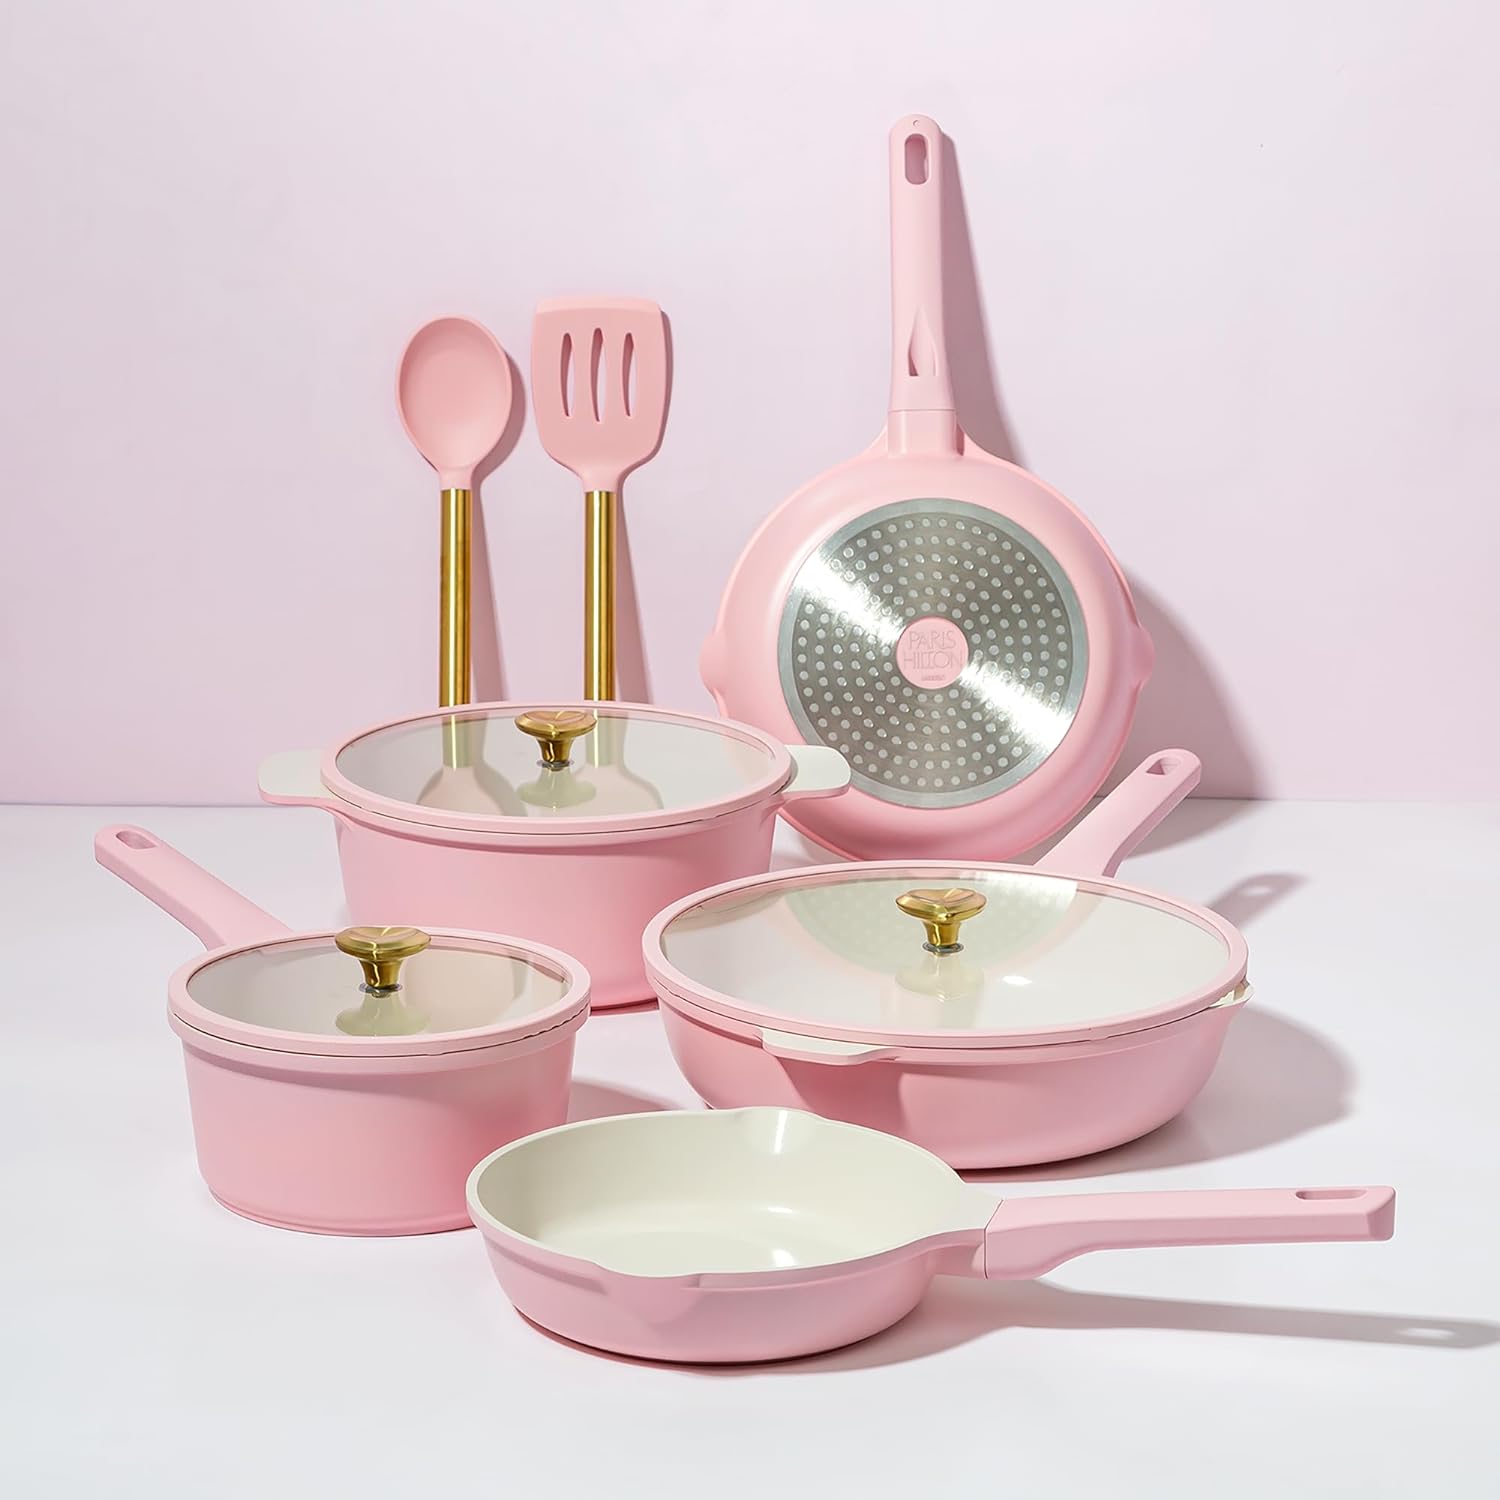 Paris Hilton Ceramic Nonstick Cookware Set, Cast Aluminum with